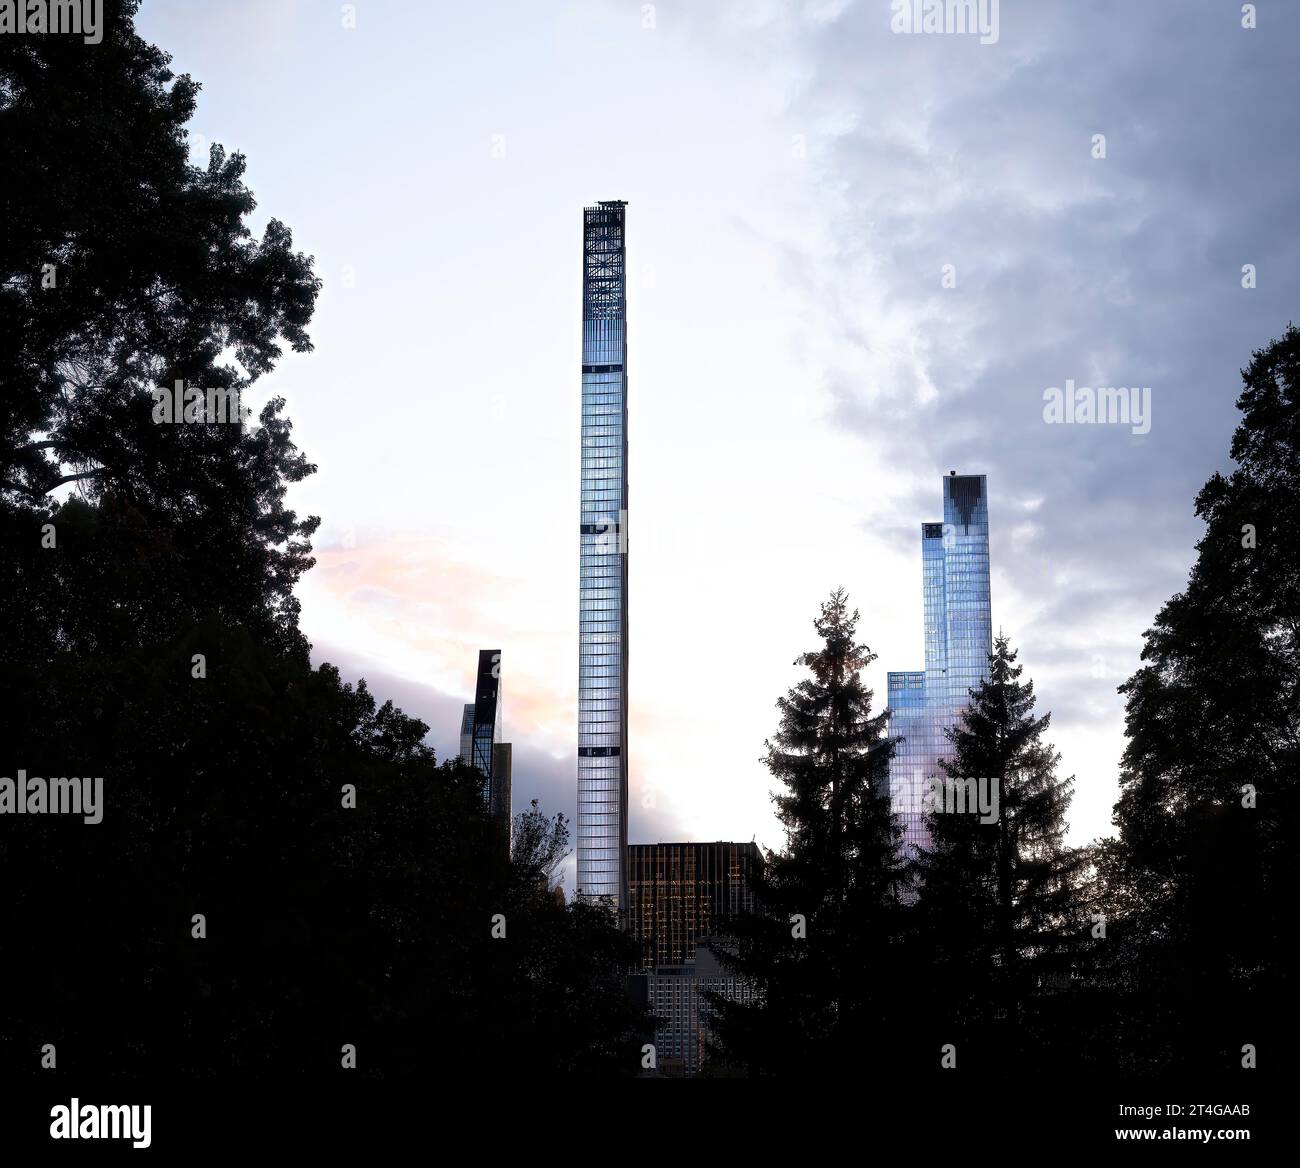 Los rascacielos de la ciudad de Nueva York brillan contra las nubes al caer la noche, vistos a través de los árboles, con la icónica torre Steinway (111 W. 57) levantándose en el centro. Foto de stock